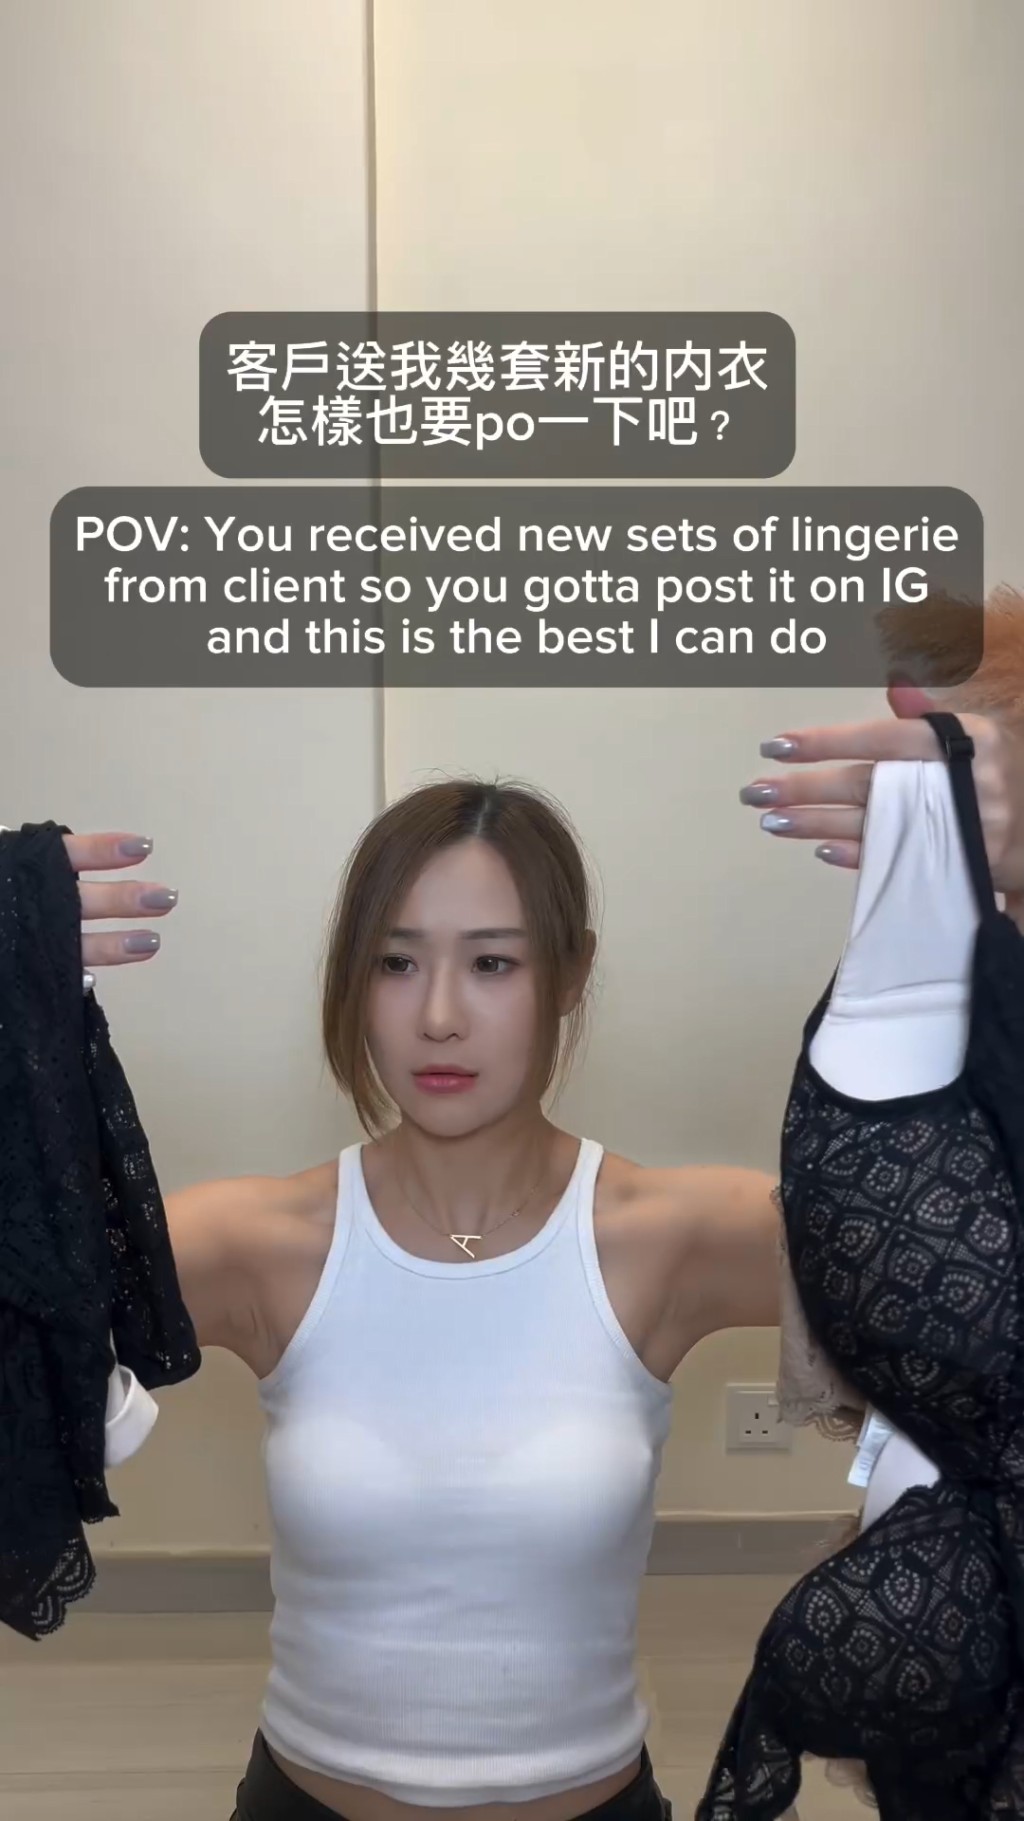 朱智賢昨日在IG貼竹新片，留言說：「客戶送多幾套新的內衣，怎樣也要po一下吧？」